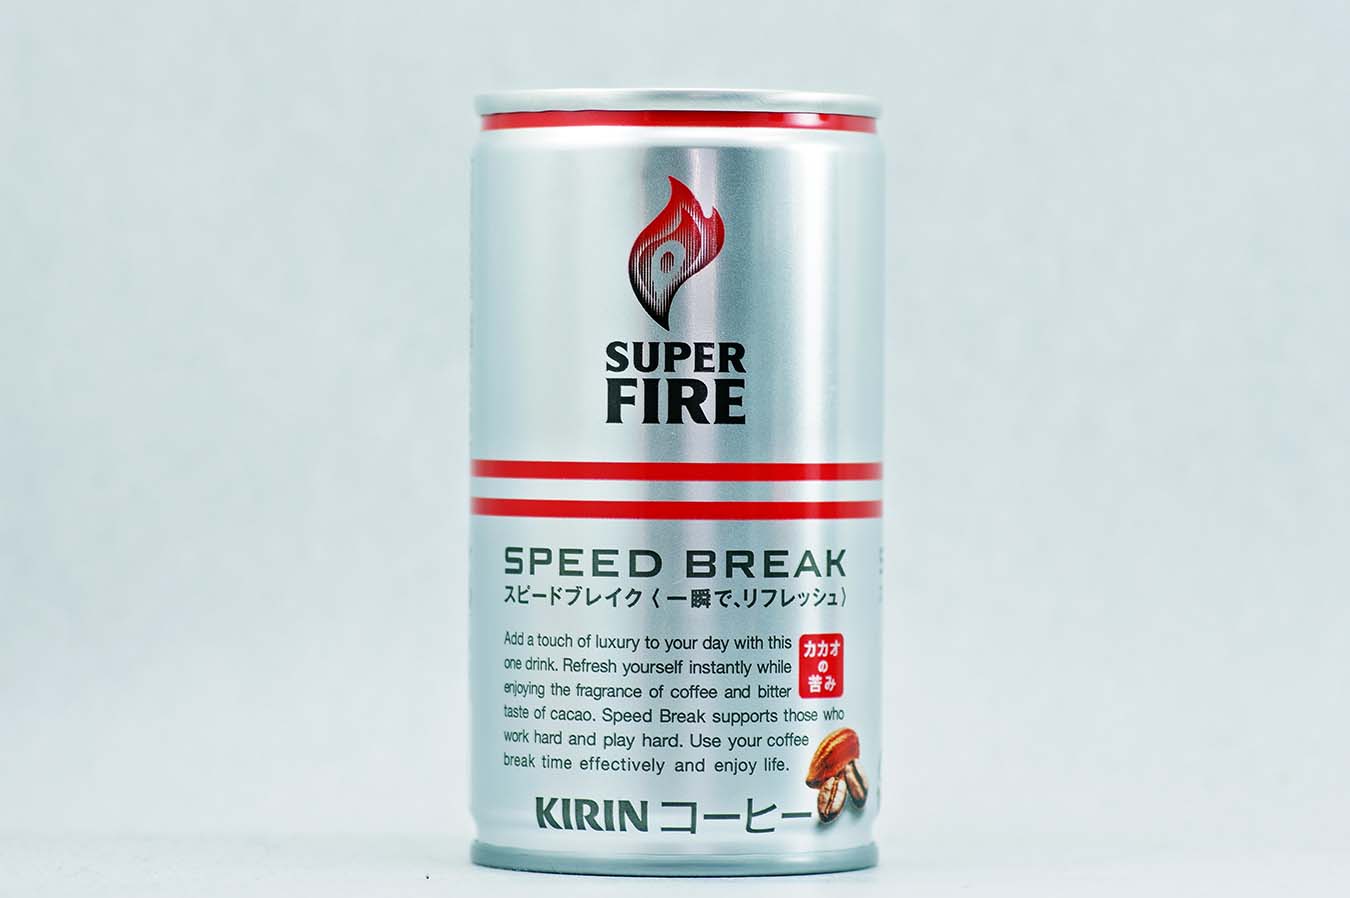 SUPERFIRE スピードブレイク 165g缶 2015年10月